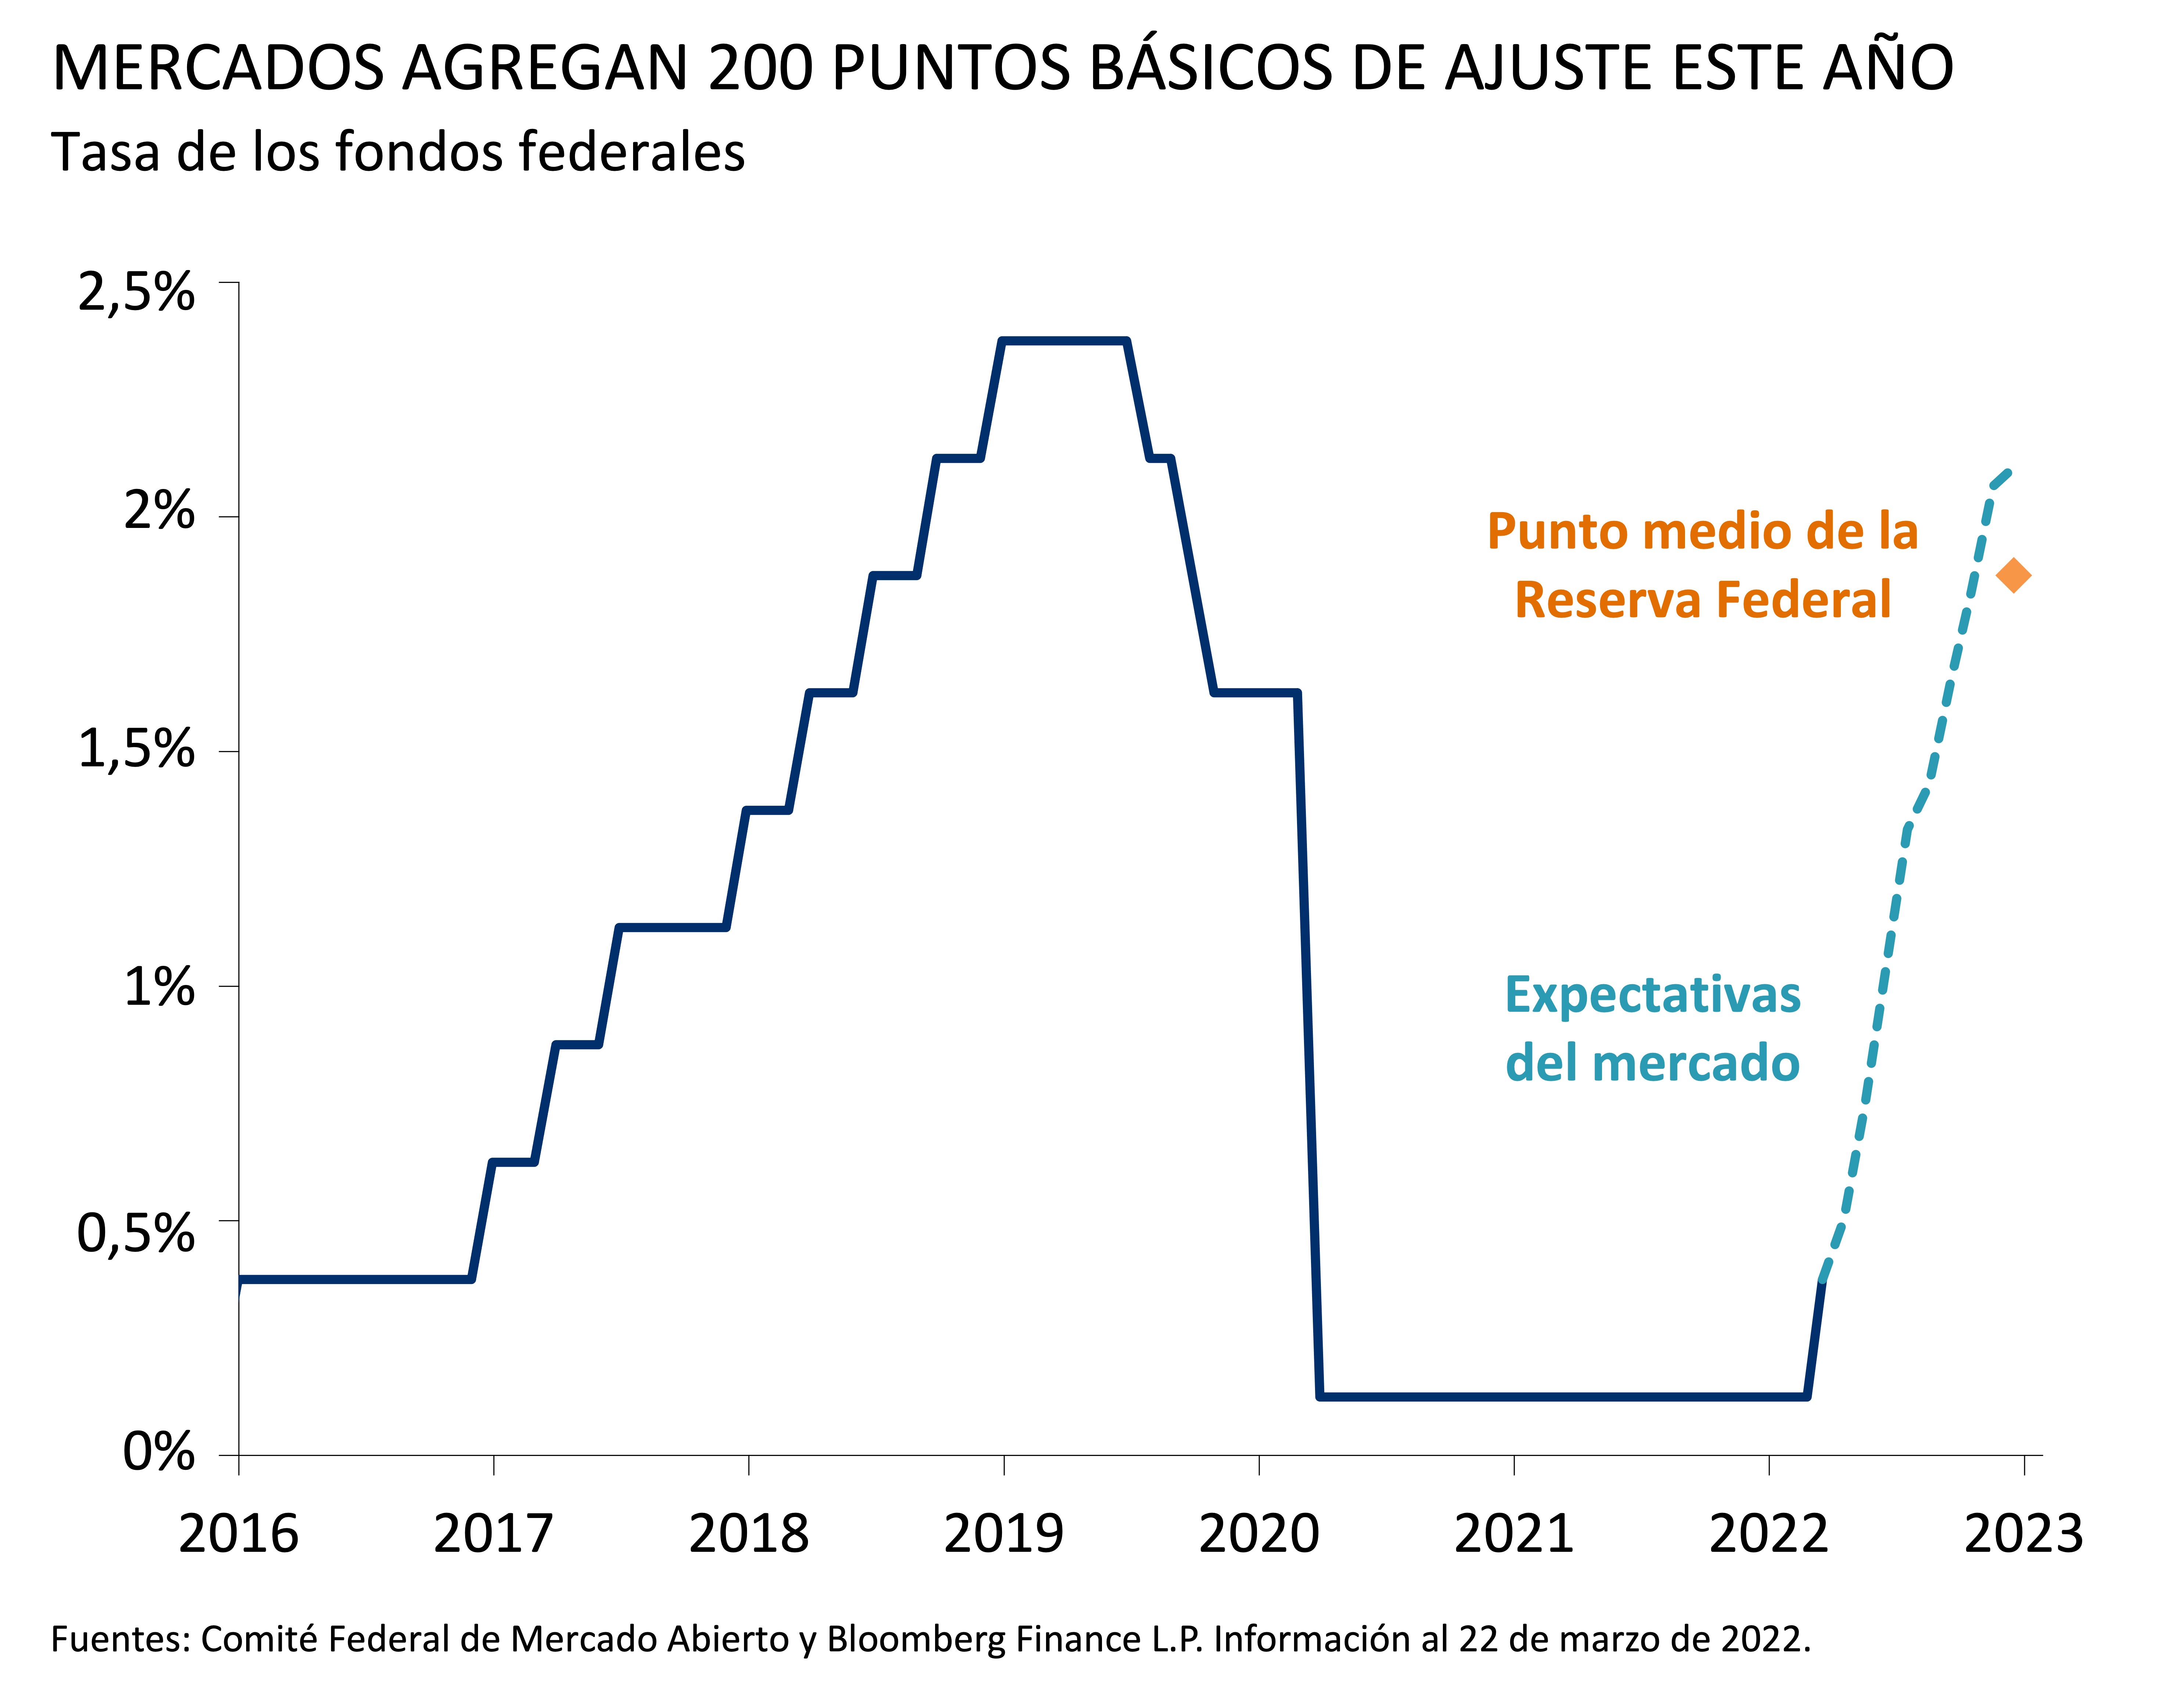 MERCADOS AGREGAN 200 PUNTOS BÁSICOS DE AJUSTE ESTE AÑO. Este gráfico muestra la tasa de los fondos federales entre 2016 y marzo de 2022 y las expectativas del mercado hasta finales de año.